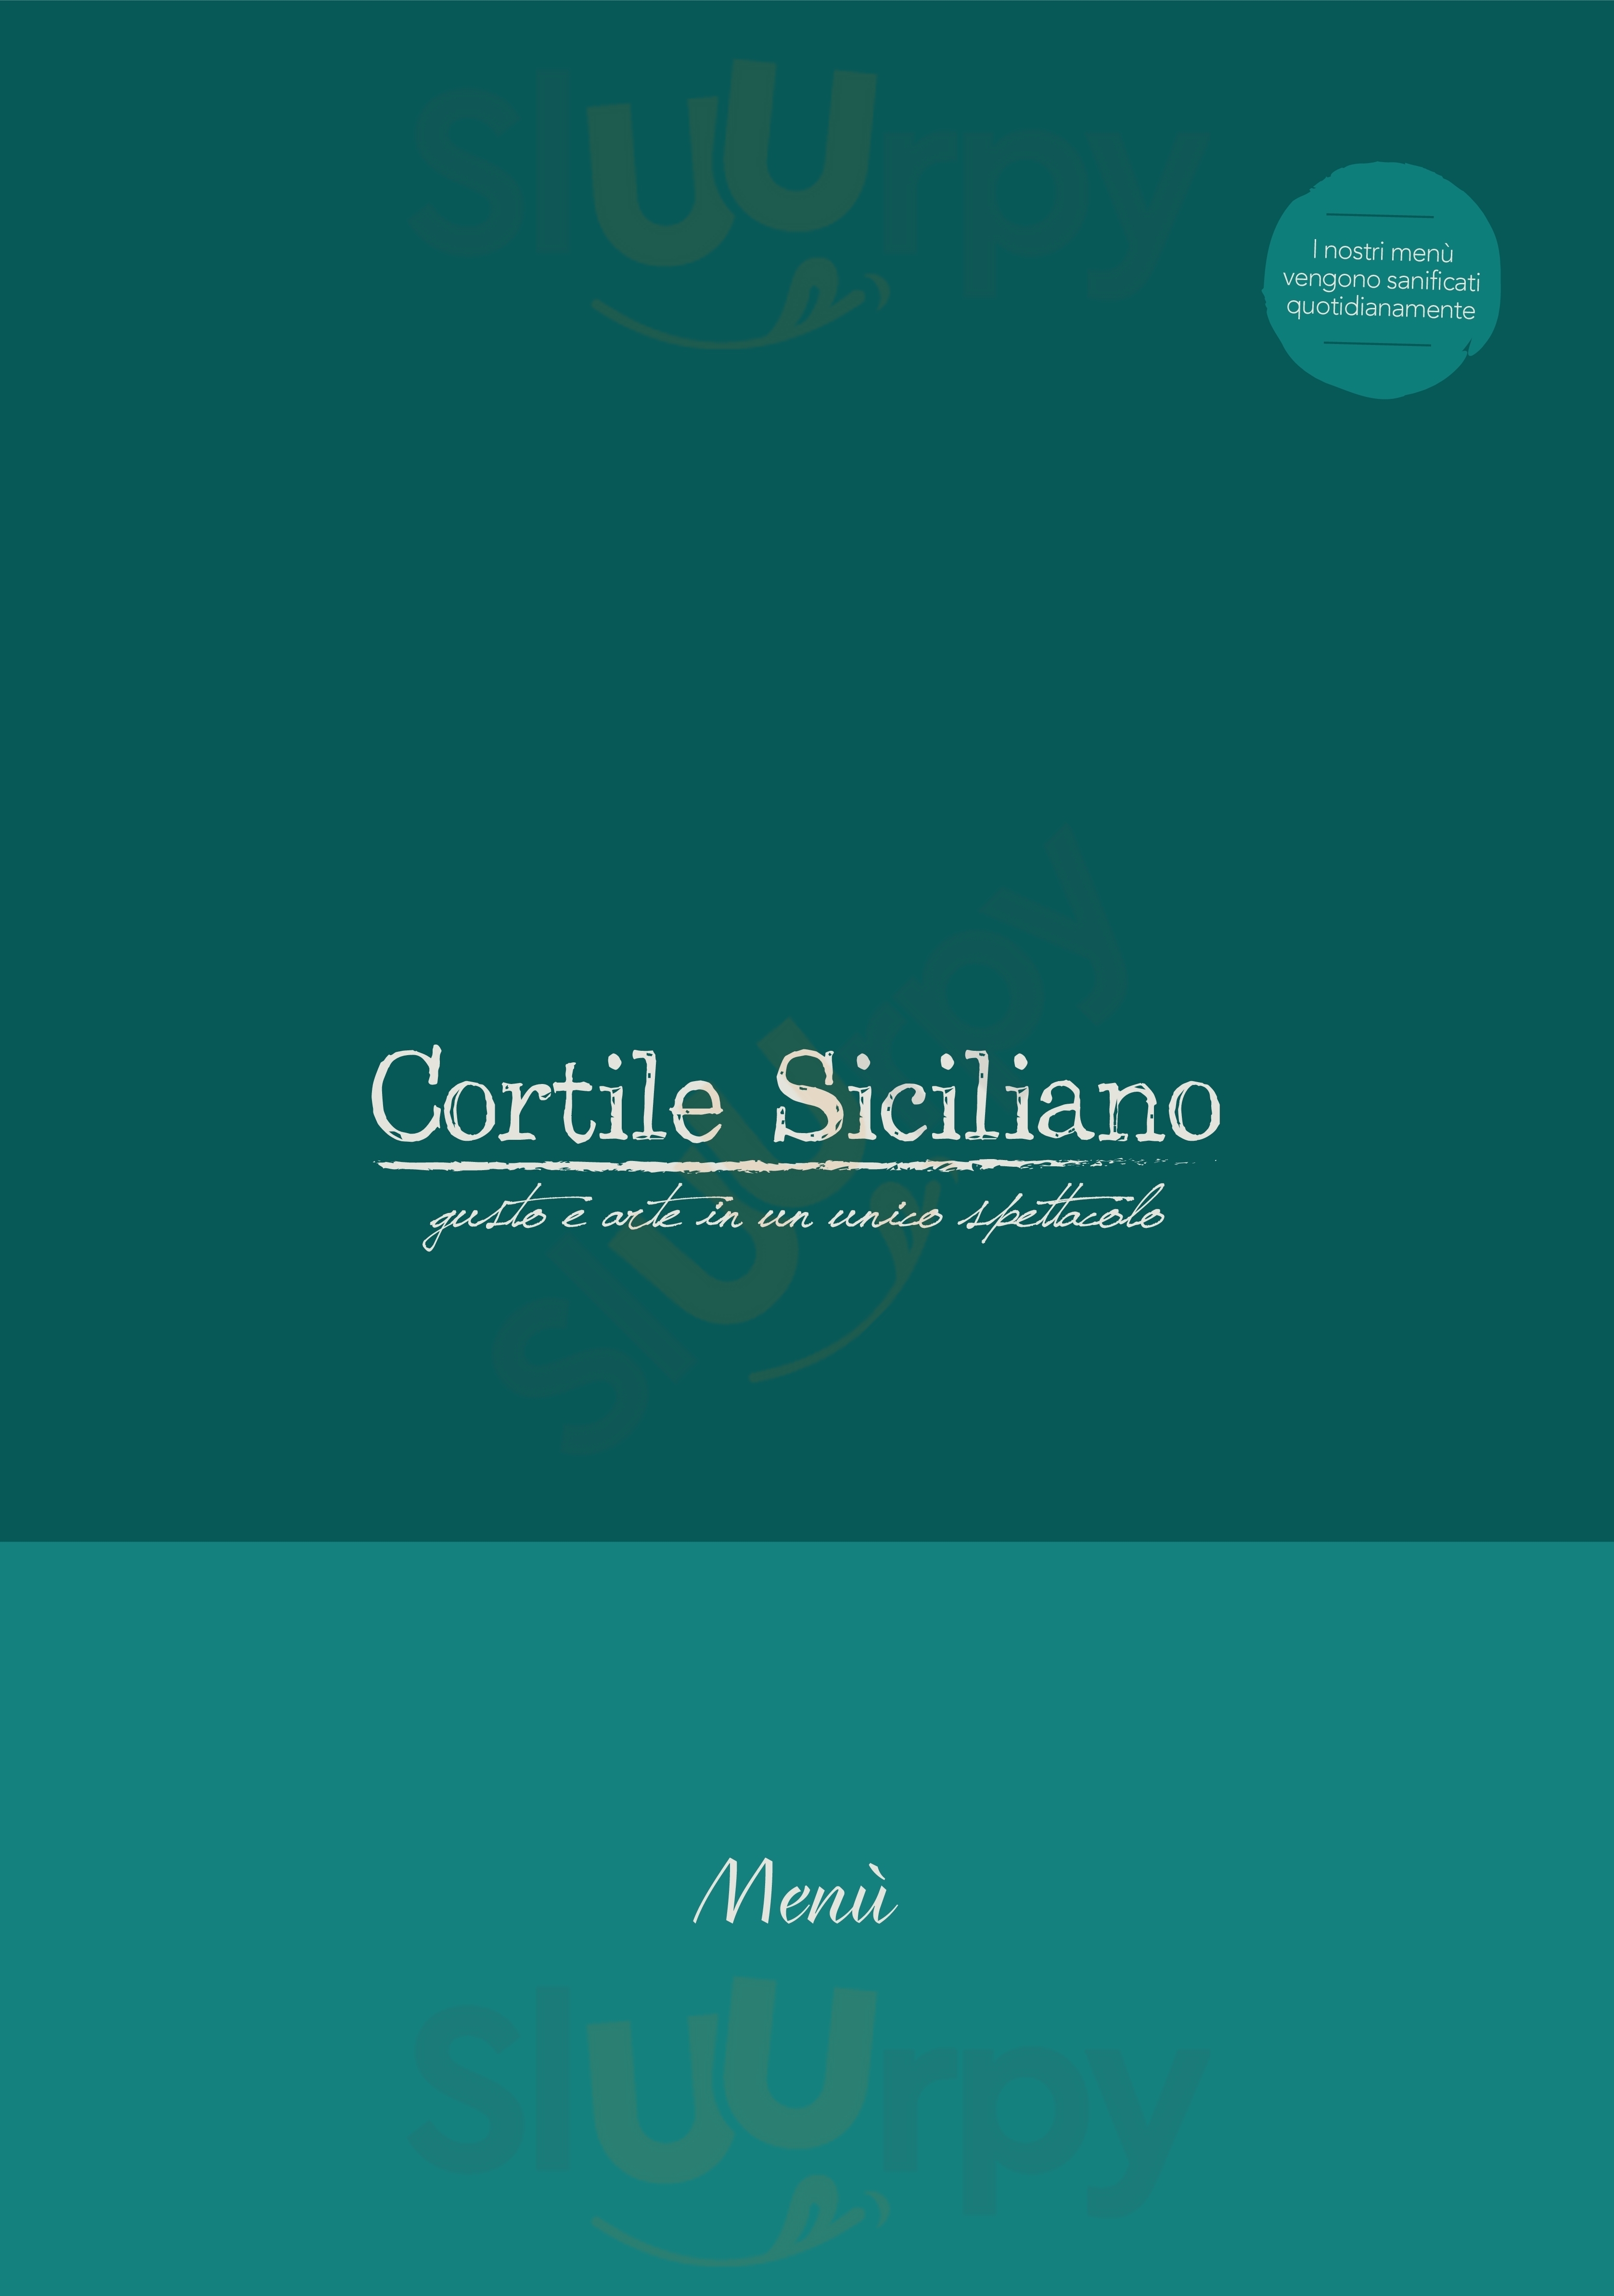 Cortile Siciliano Tremestieri Etneo menù 1 pagina